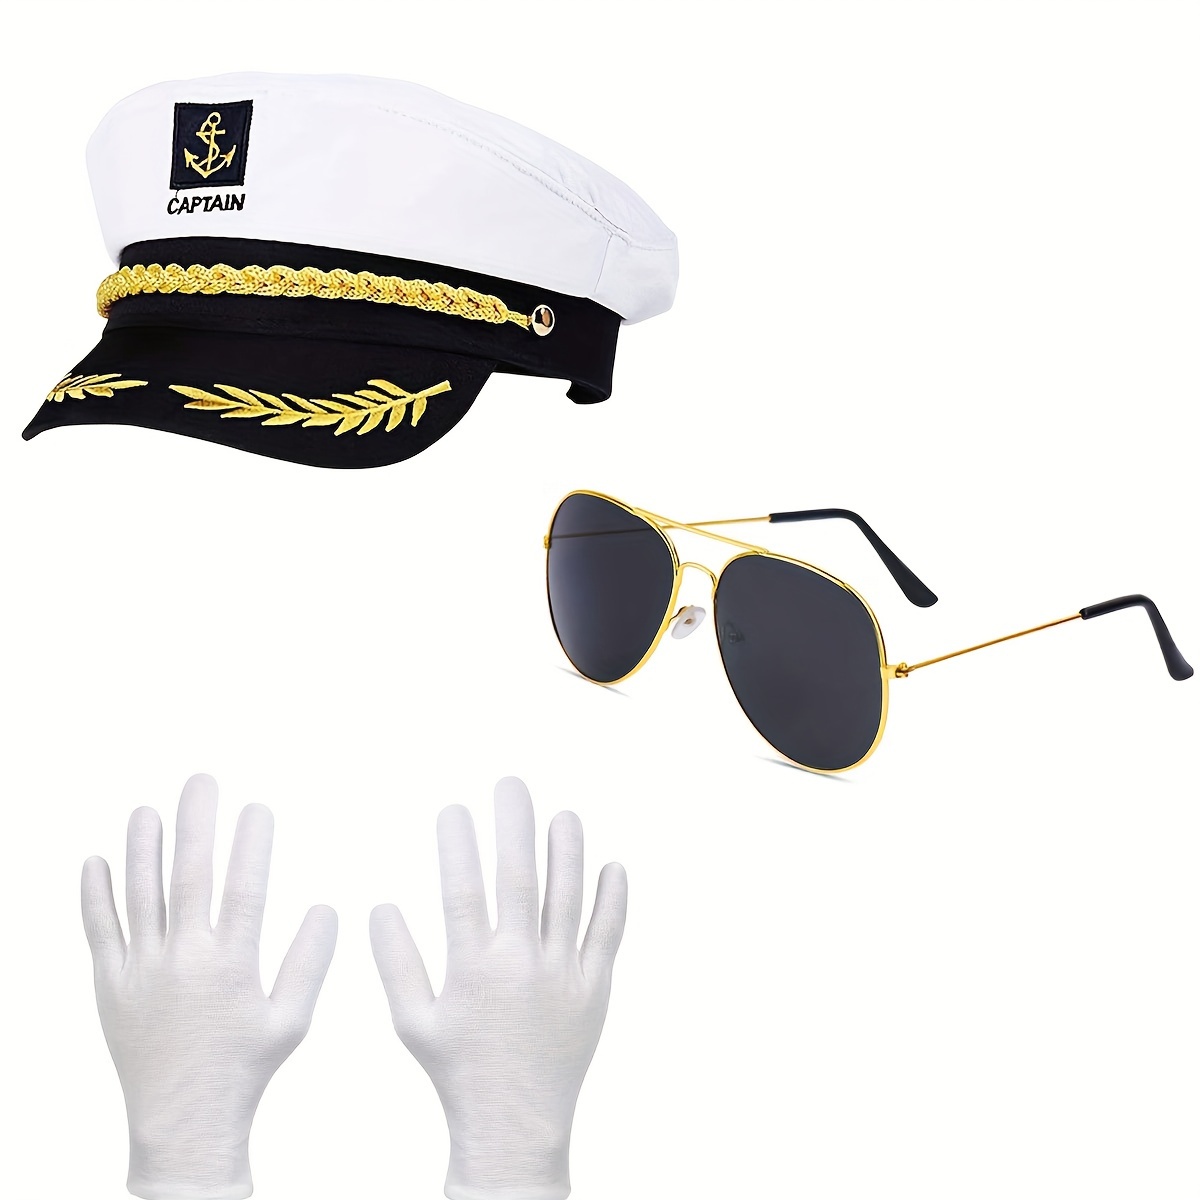 Gorra de capitán de yate, 2 piezas, color azul marino, para niños